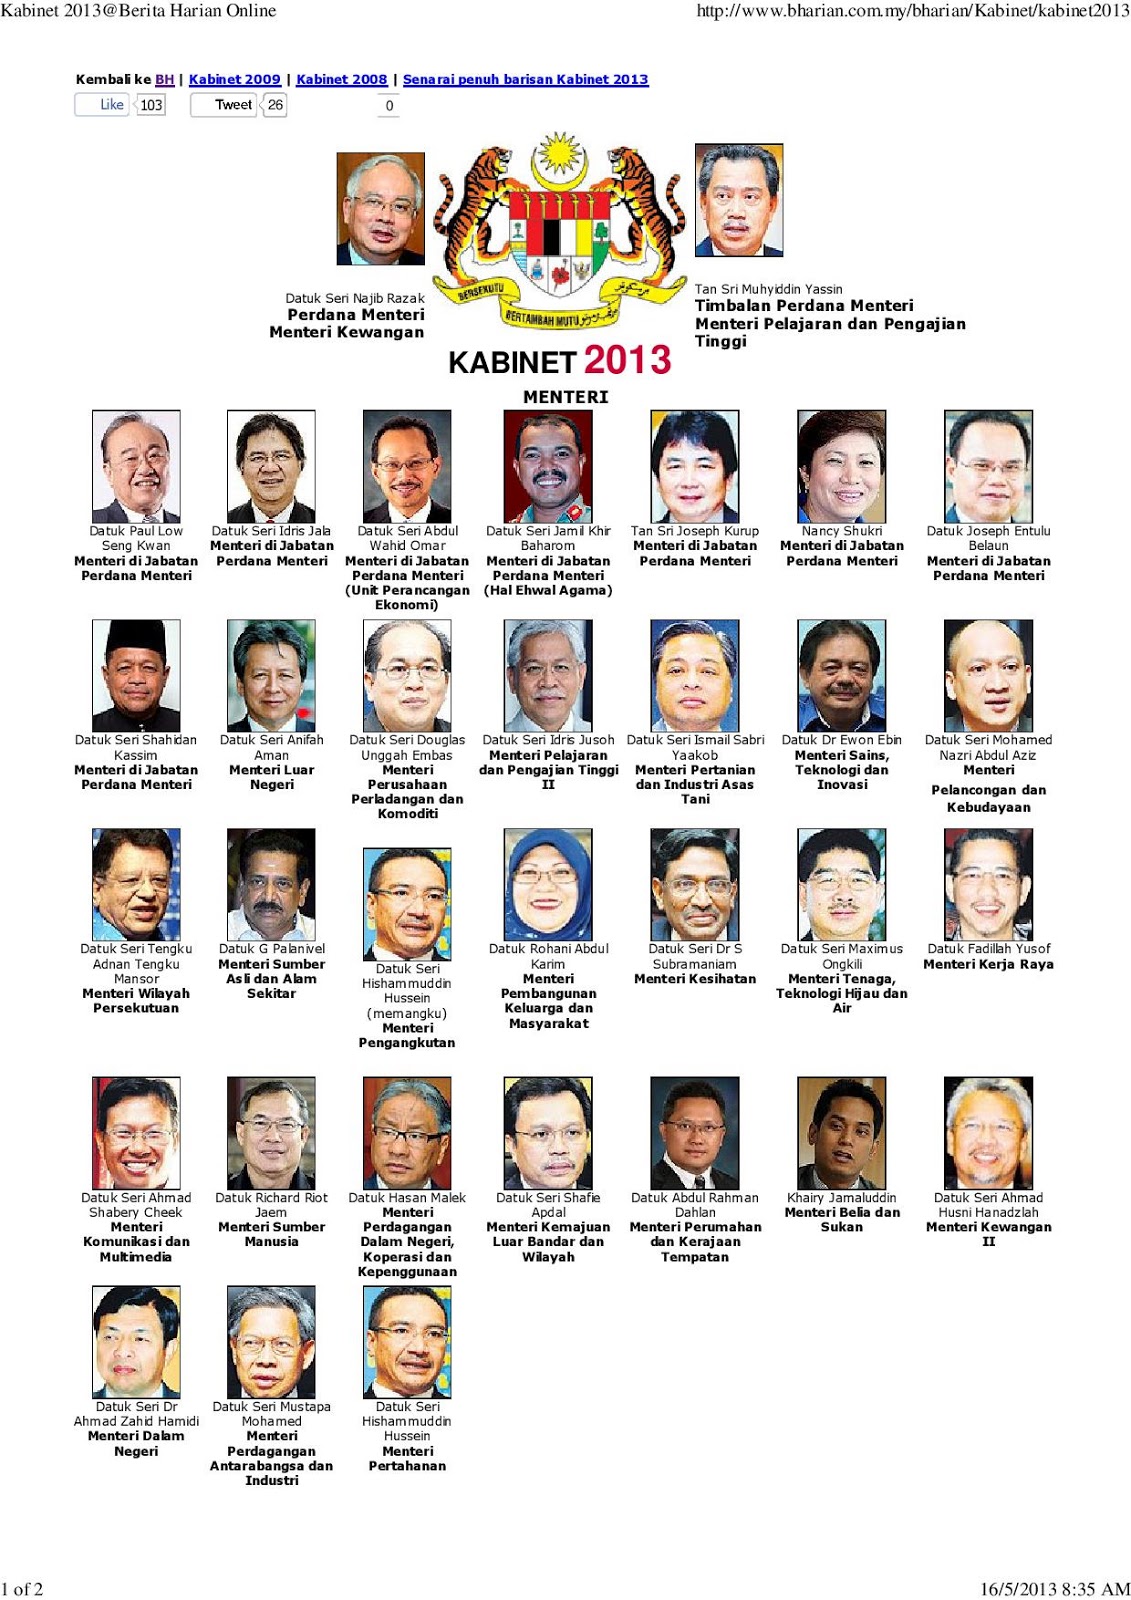 aku Dayat: Senarai Penuh Menteri Kabinet Baru Malaysia 2013